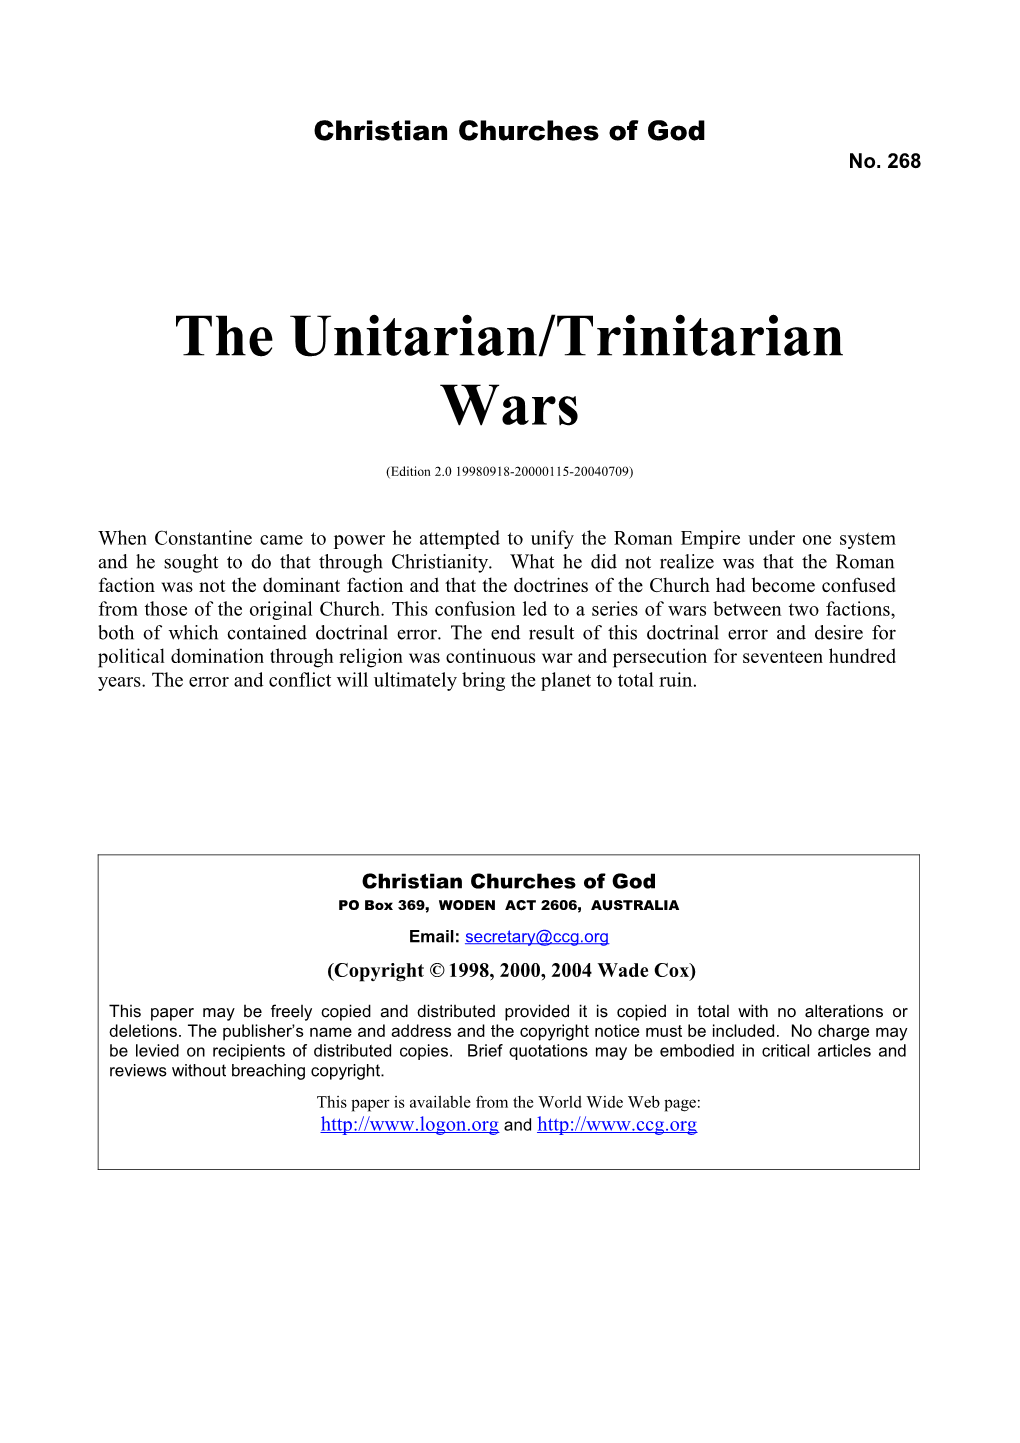 The Unitarian/Trinitarian Wars (No. 268)